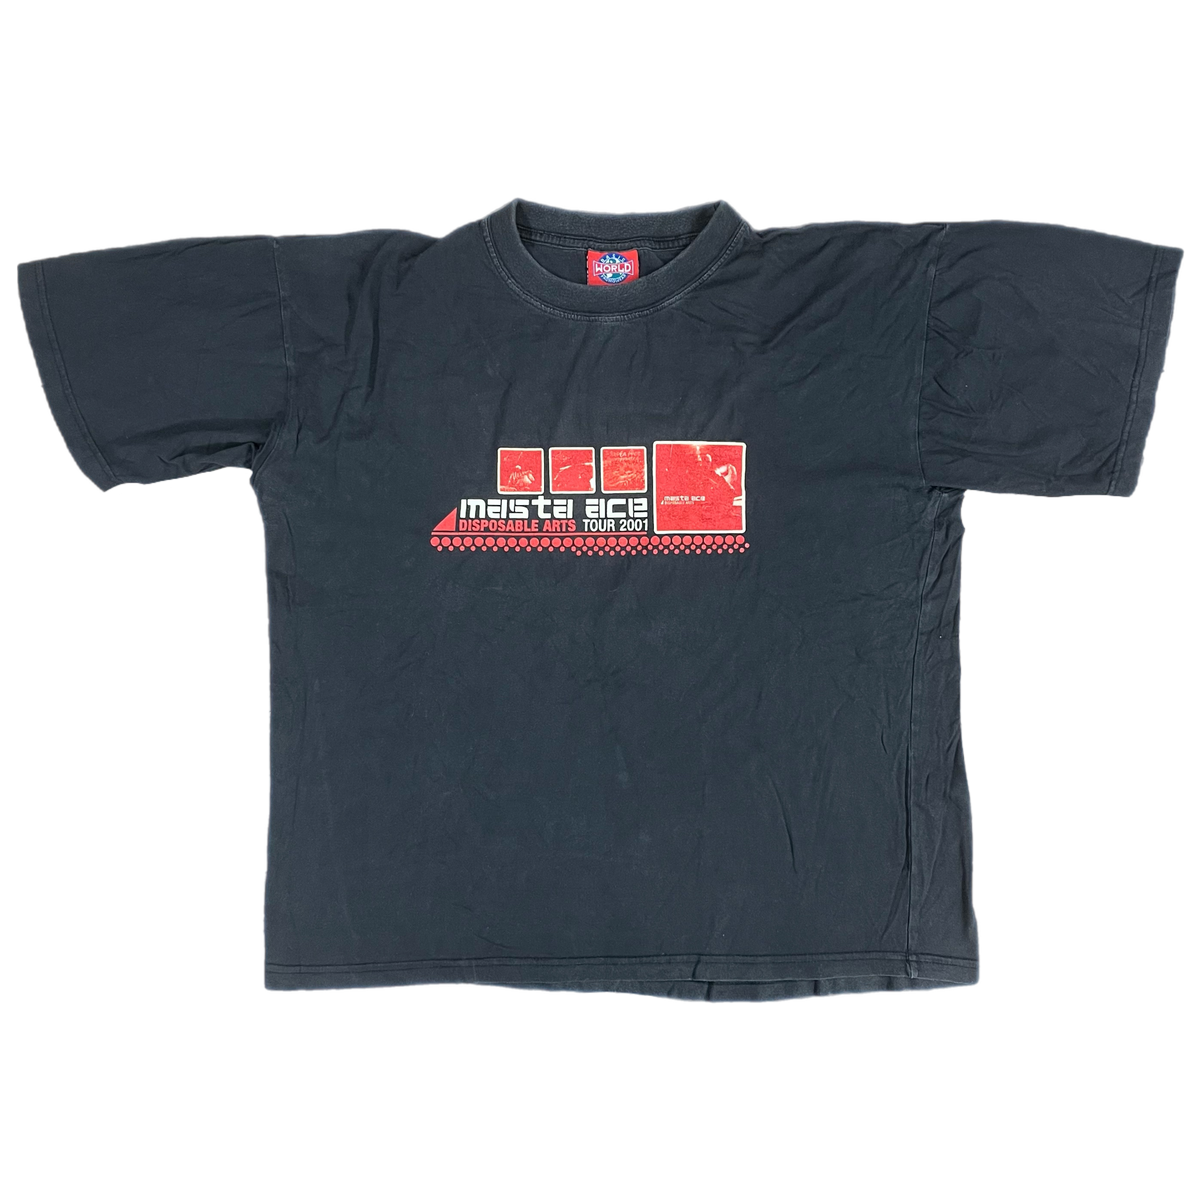 Vintage Masta Ace &quot;Disposable Arts&quot; 2001 Tour T-Shirt